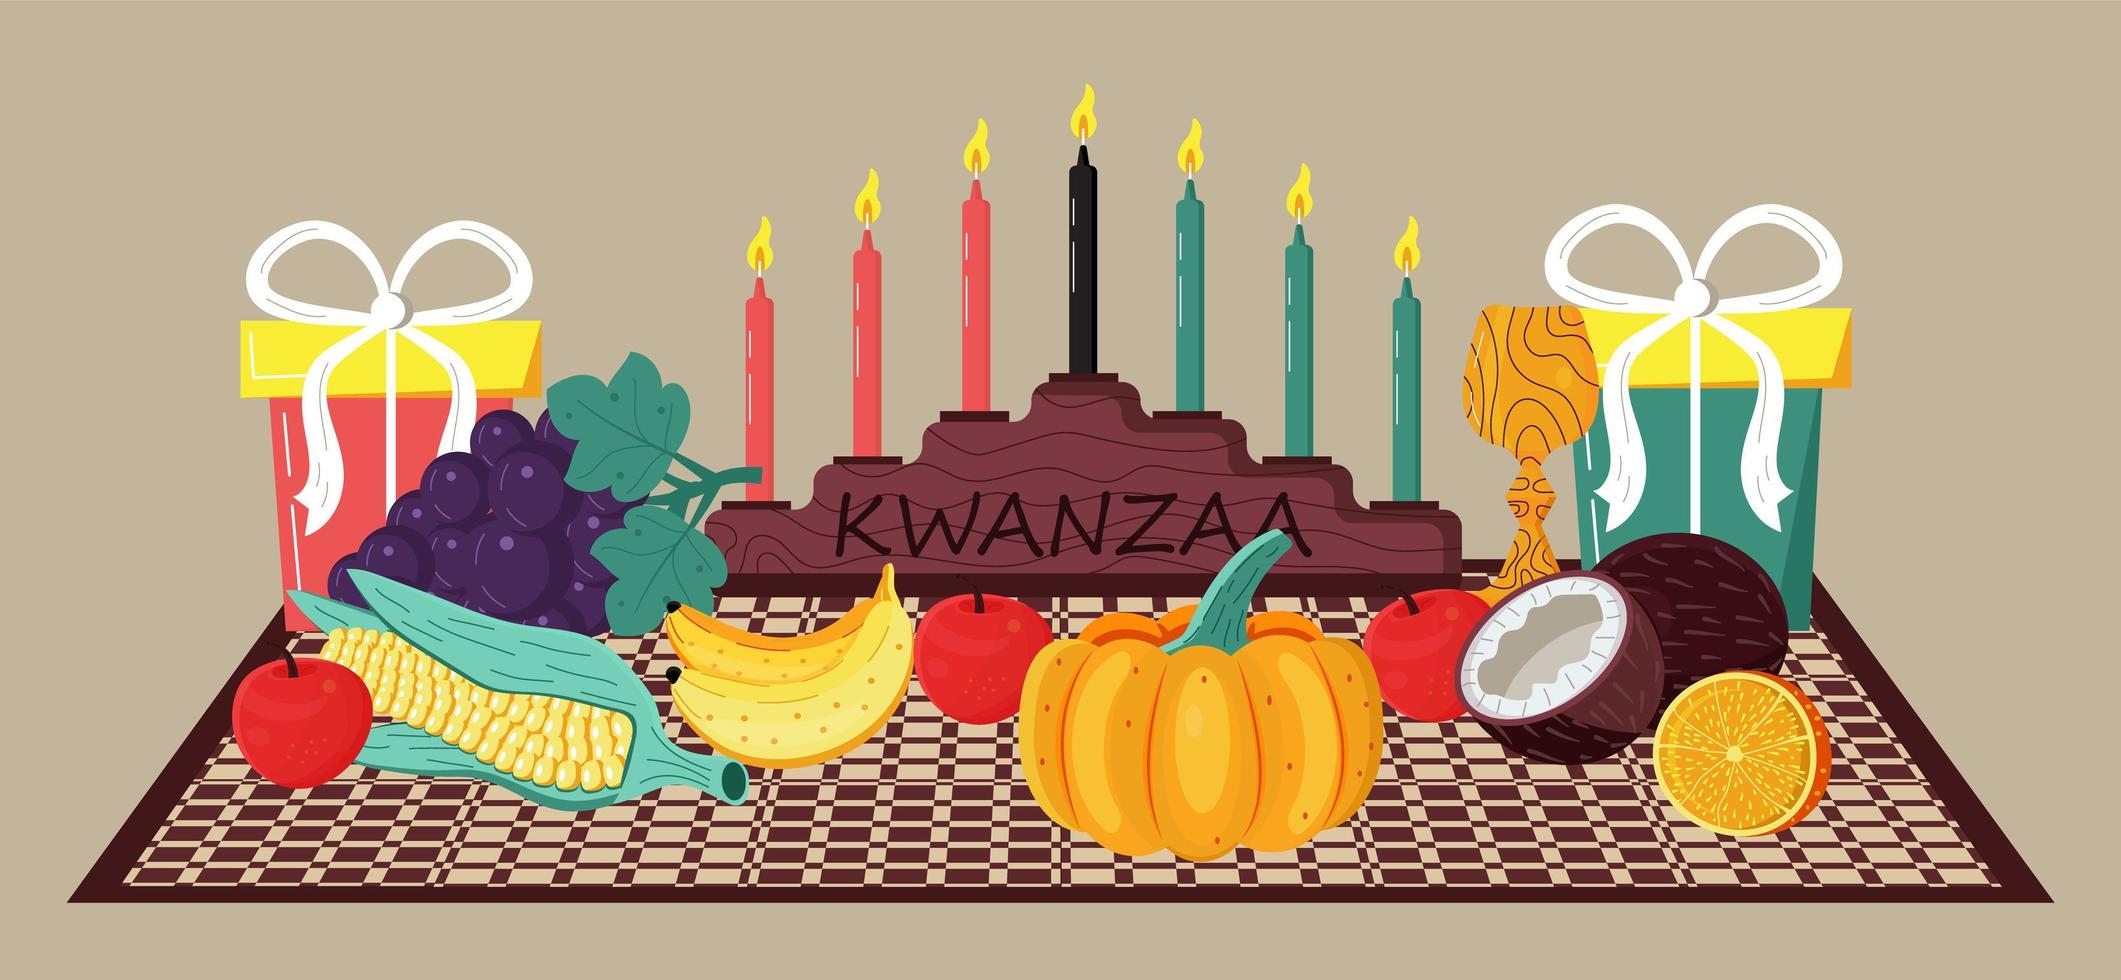 vetor de convite kwanzaa feliz para web, cartão, mídias sociais. kwanza feliz comemorado de 26 de dezembro a 1 de janeiro. sete velas acesas.